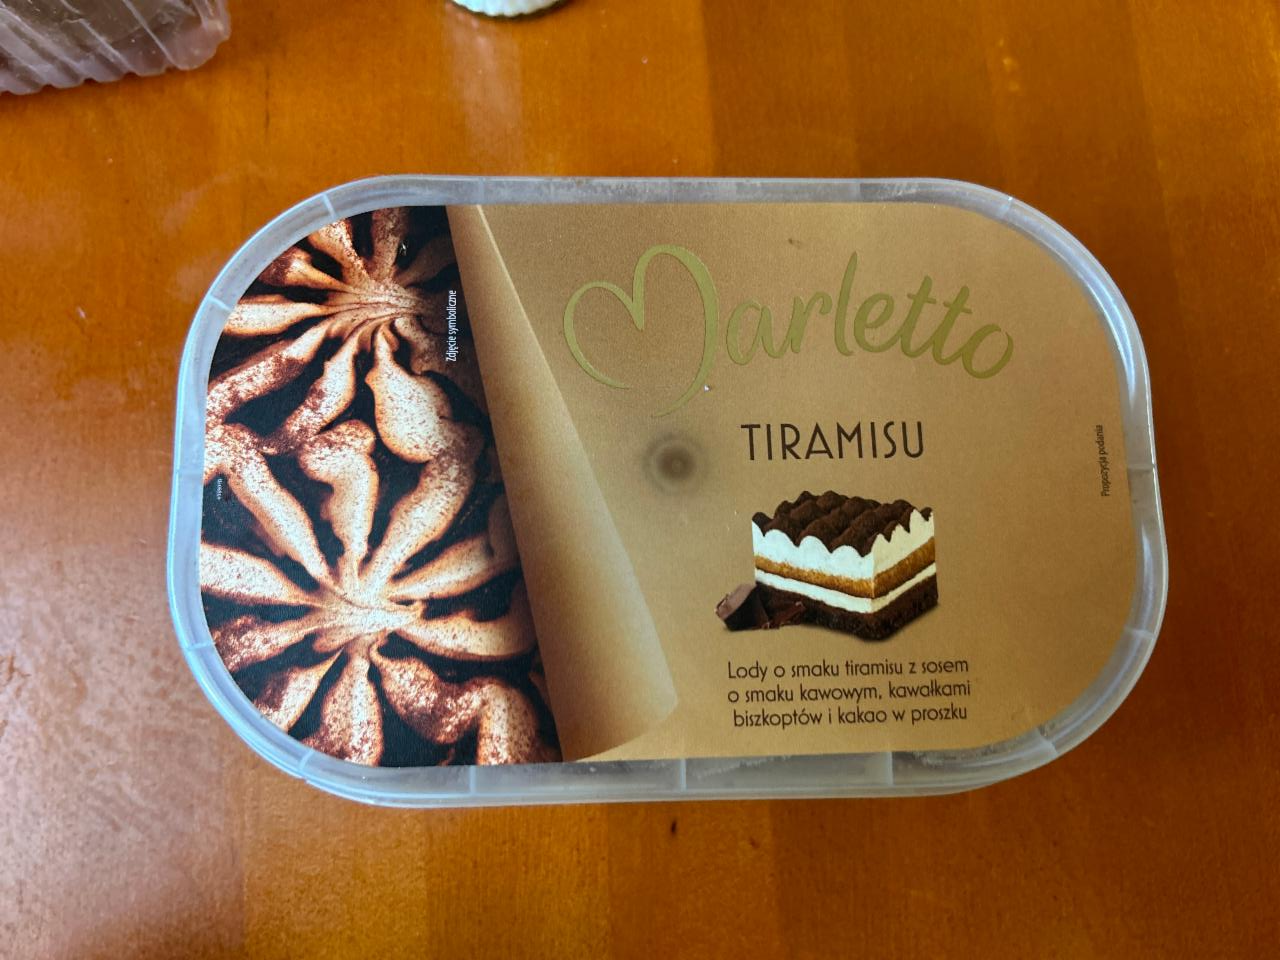 Фото - Морозиво зі смаком тірамісу Tiramisu Marletto